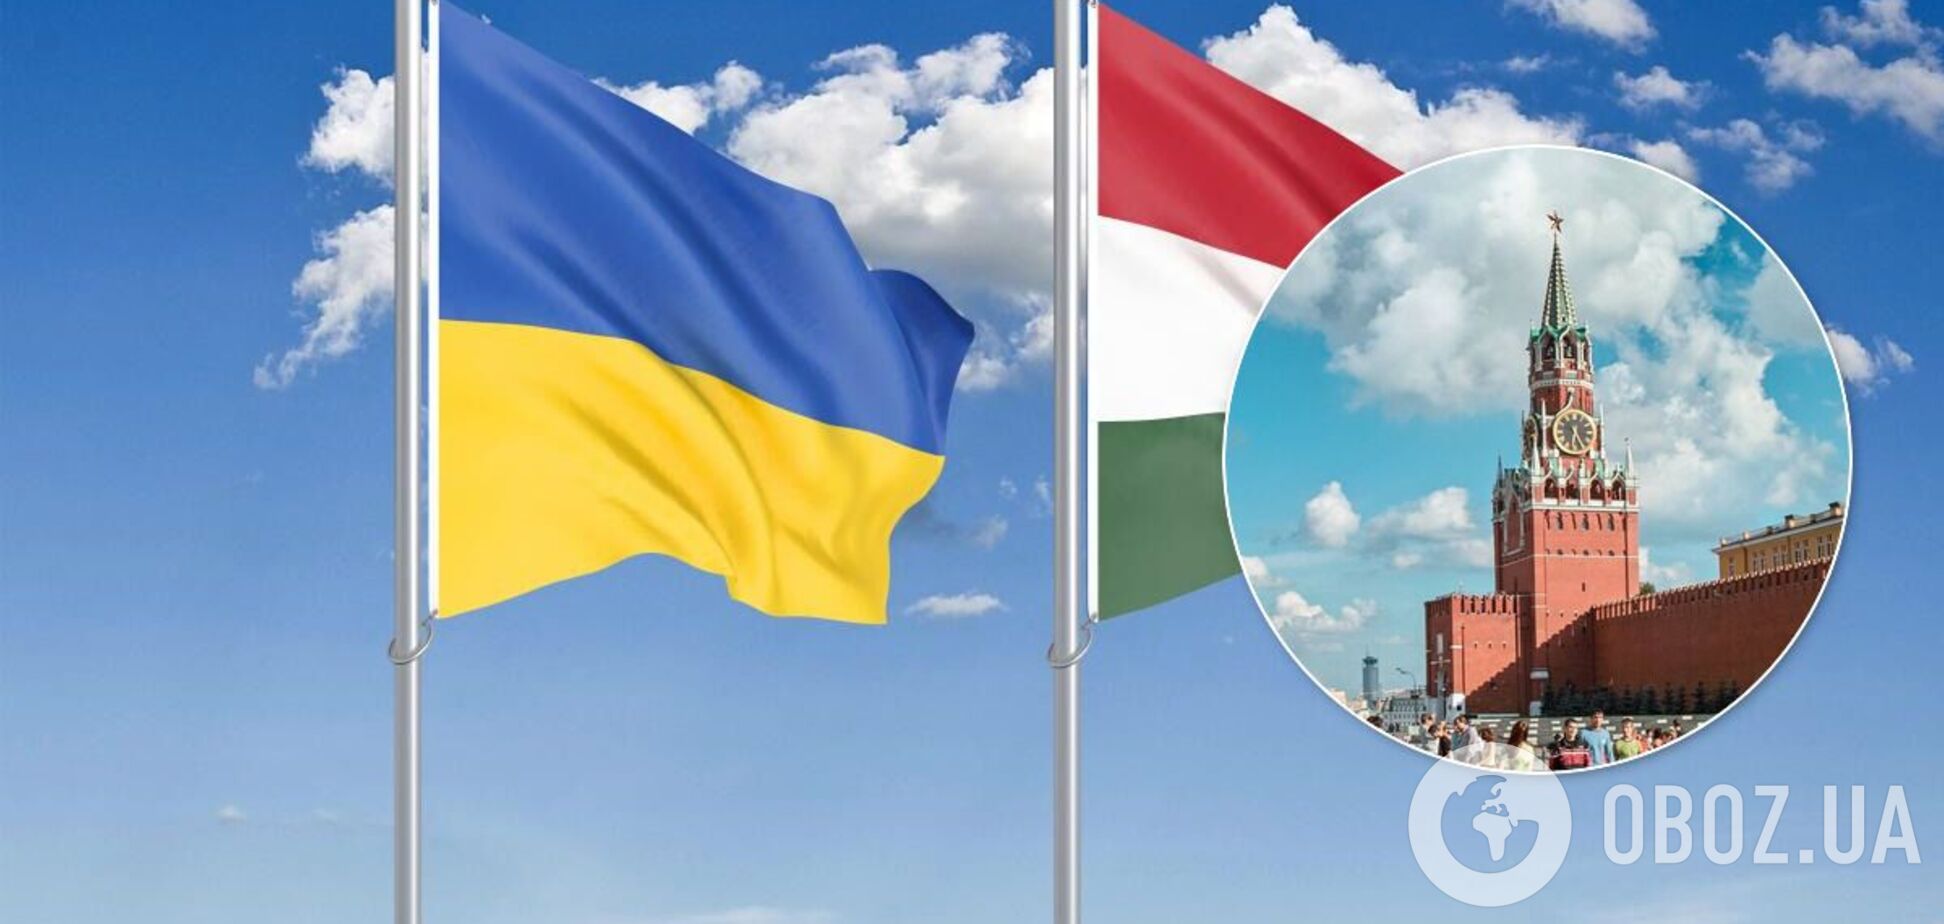 Конфлікт Угорщини та України на Закарпатті влаштувала Росія – ІС